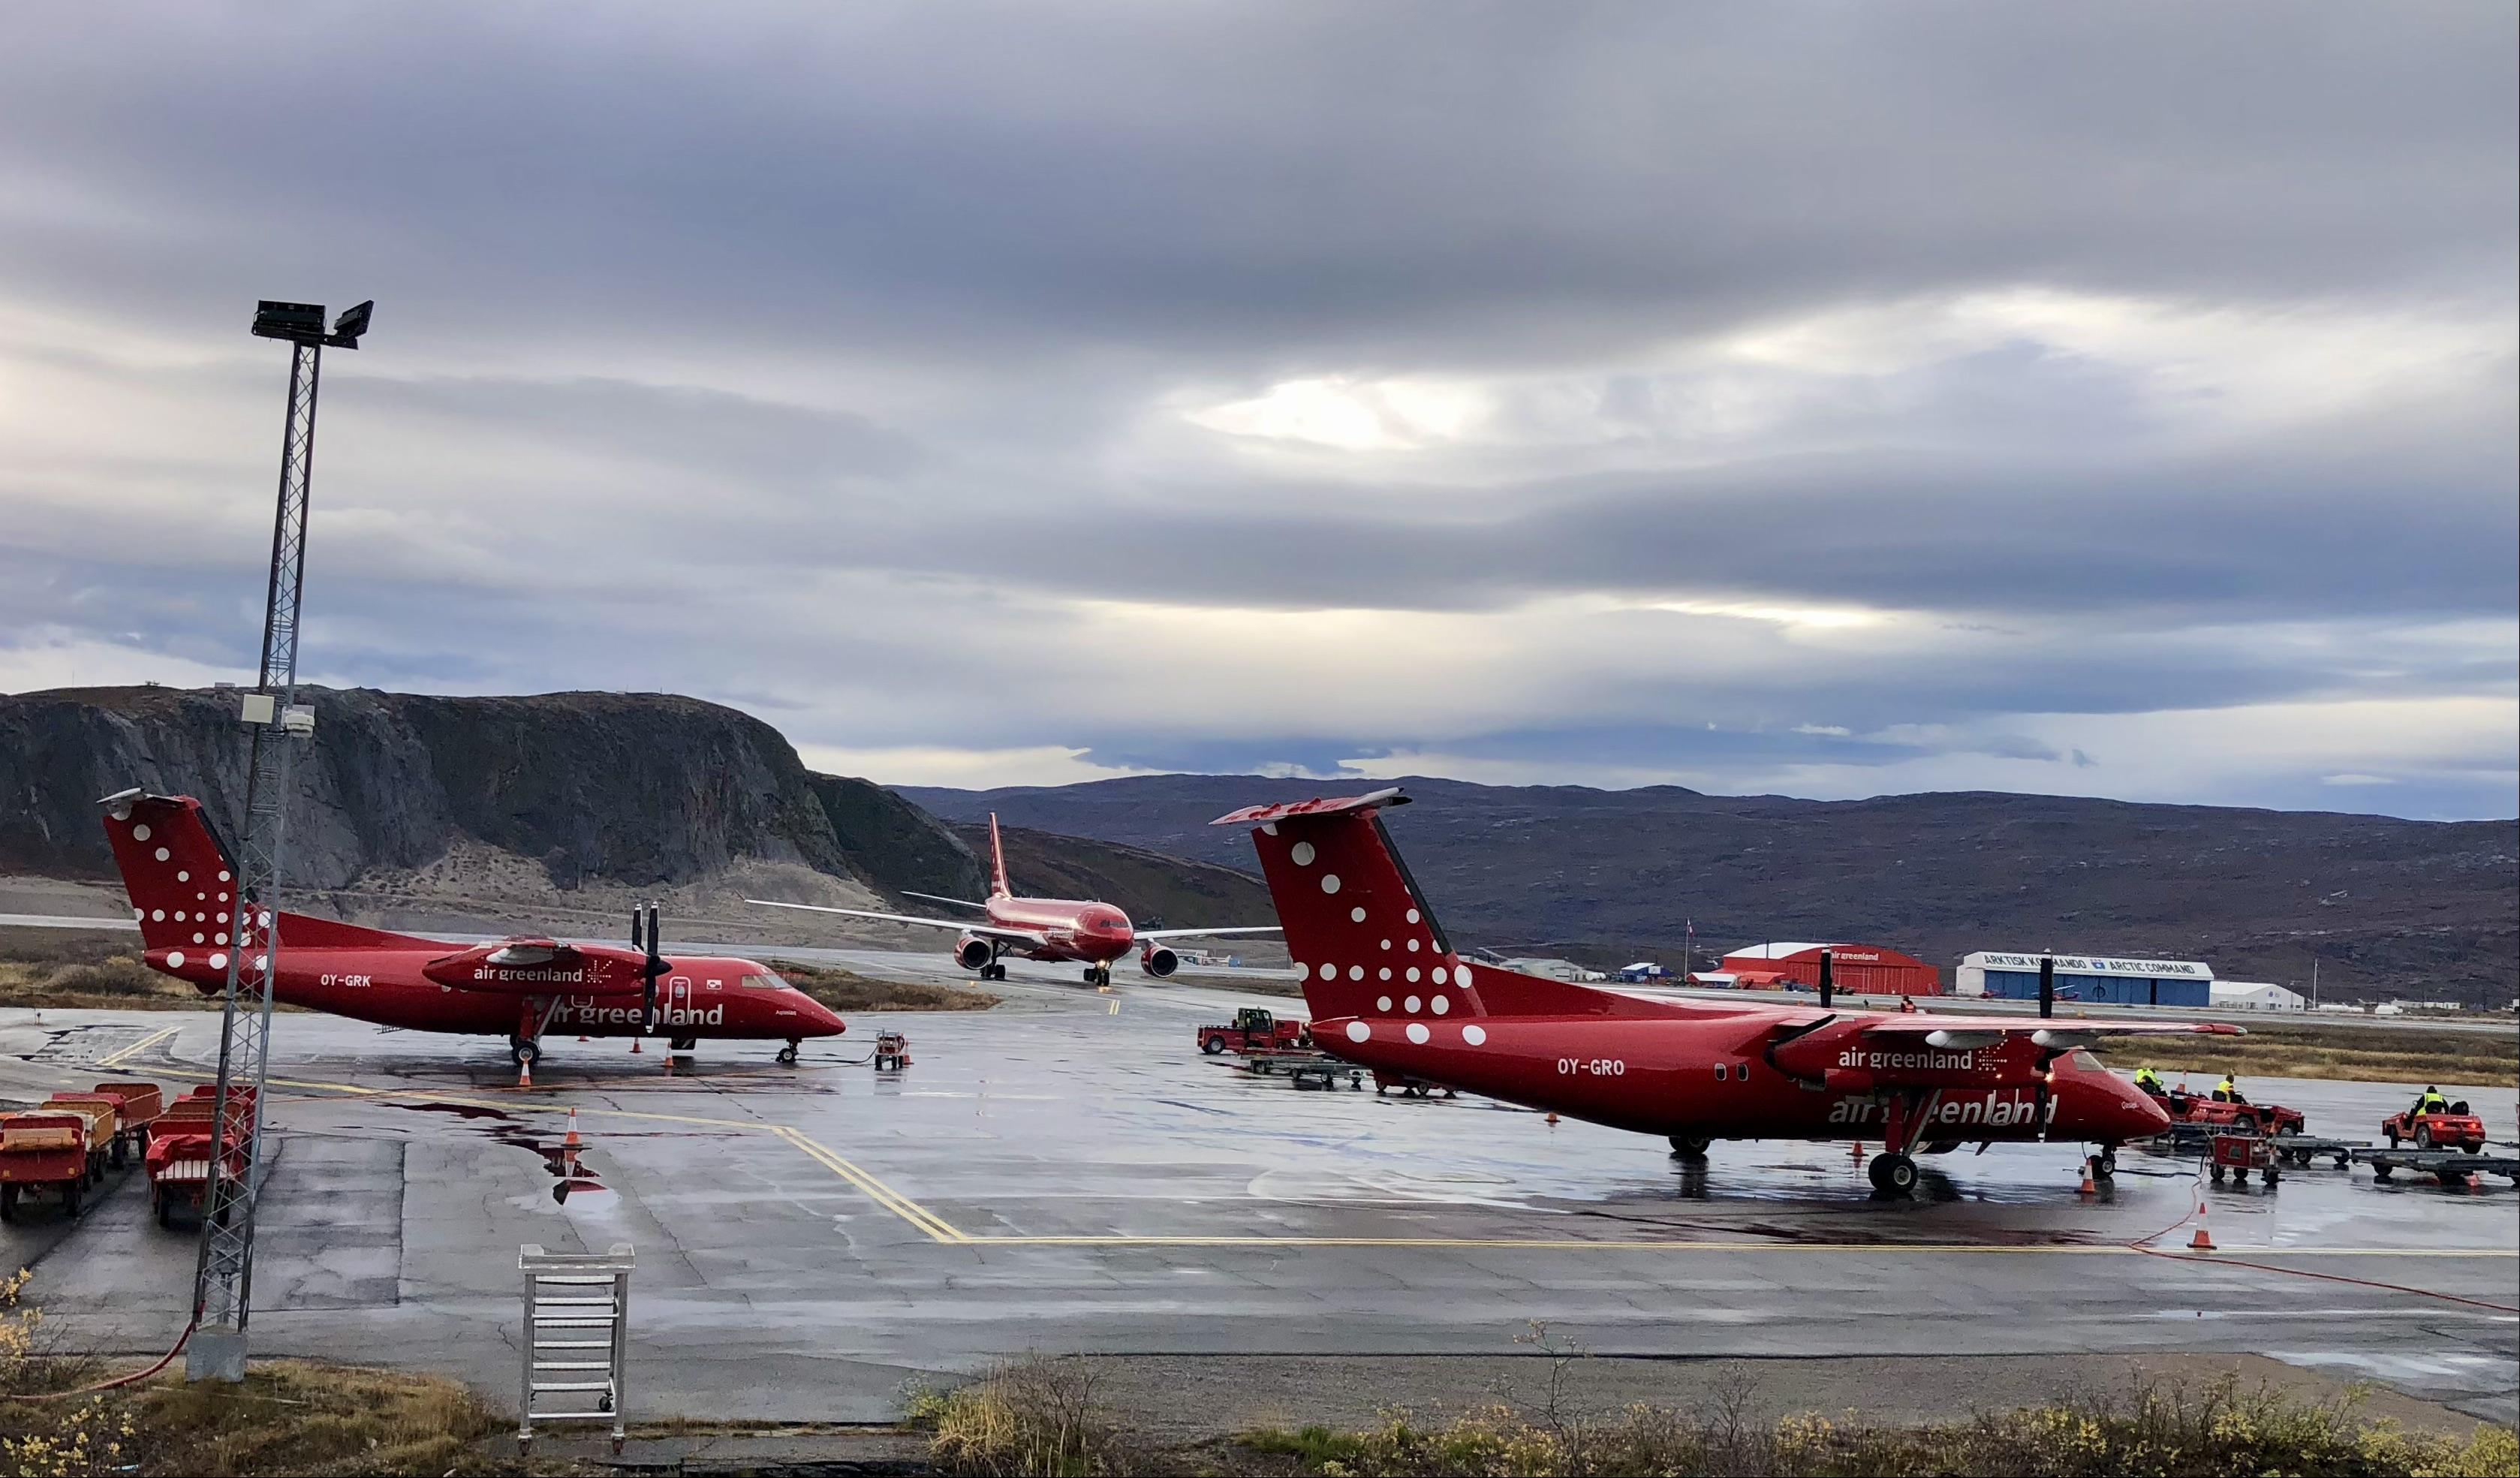 Air Greenland aircraft